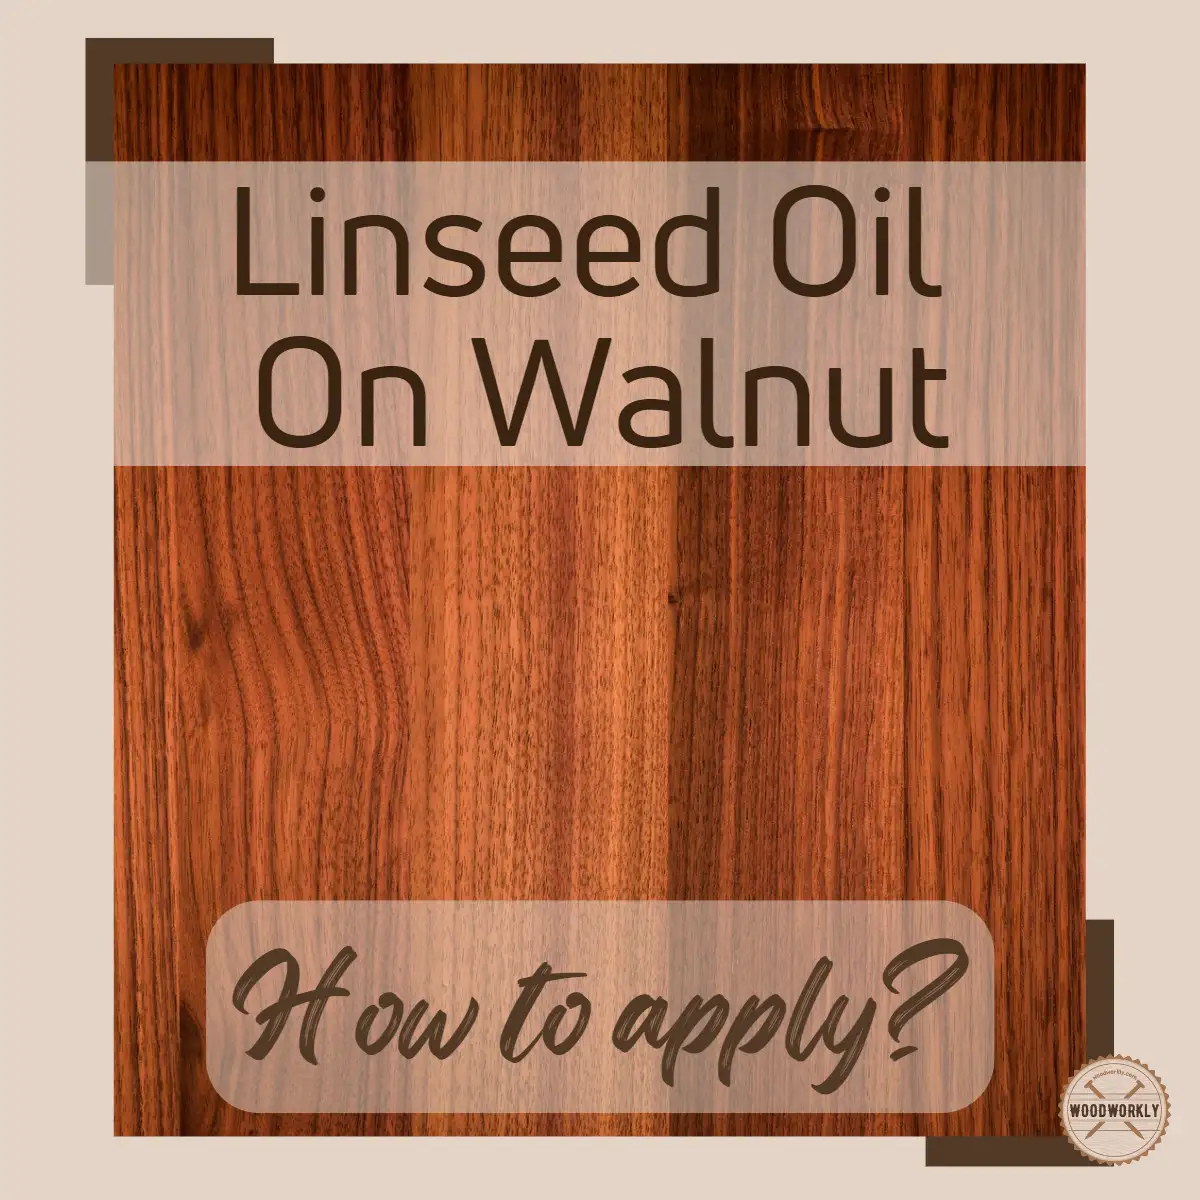 Linseed Oil On Walnut